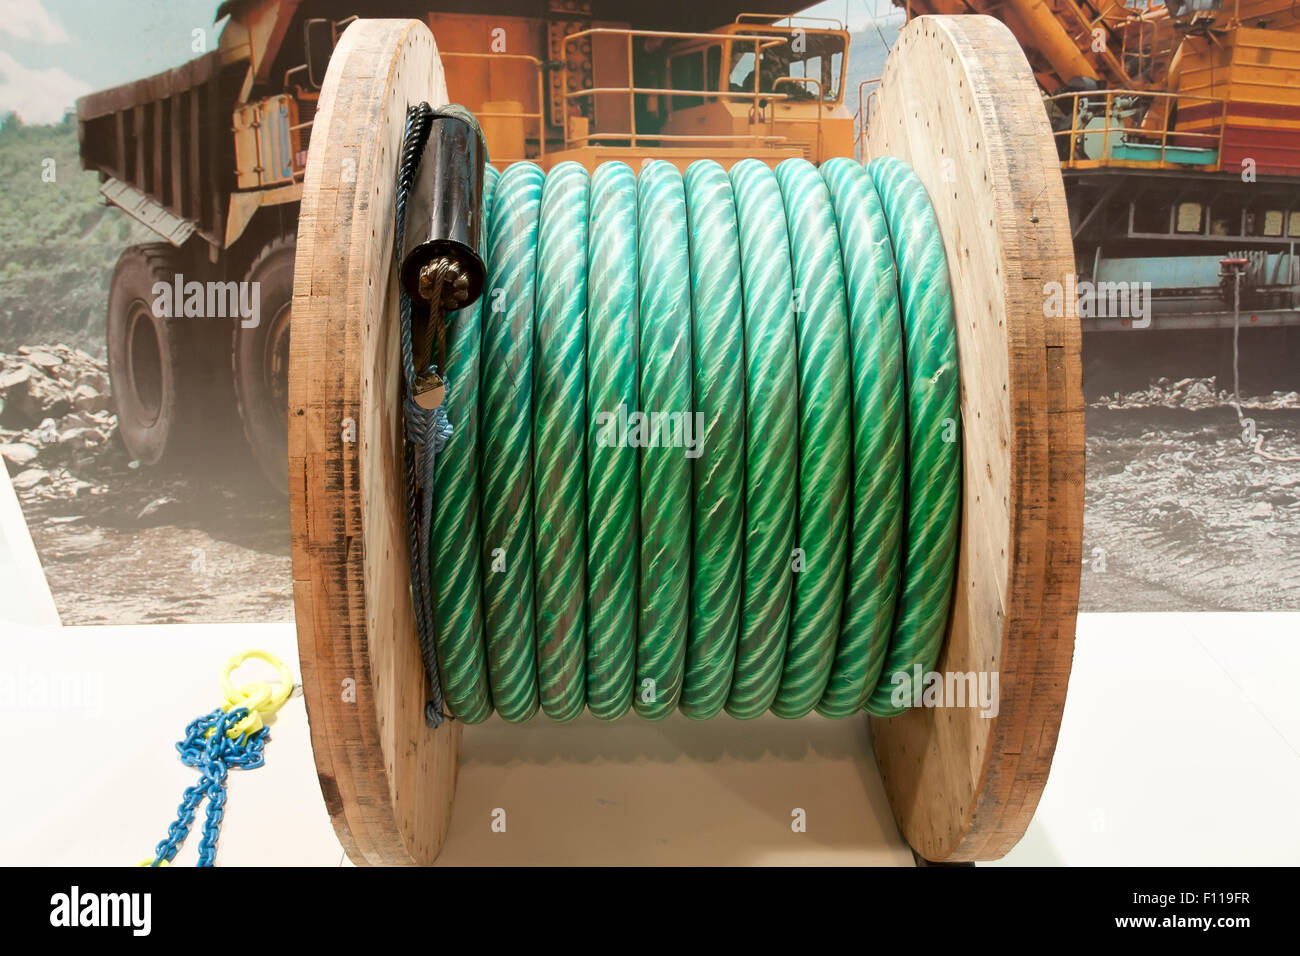 Heavy Duty Cable Reel Stock Photo